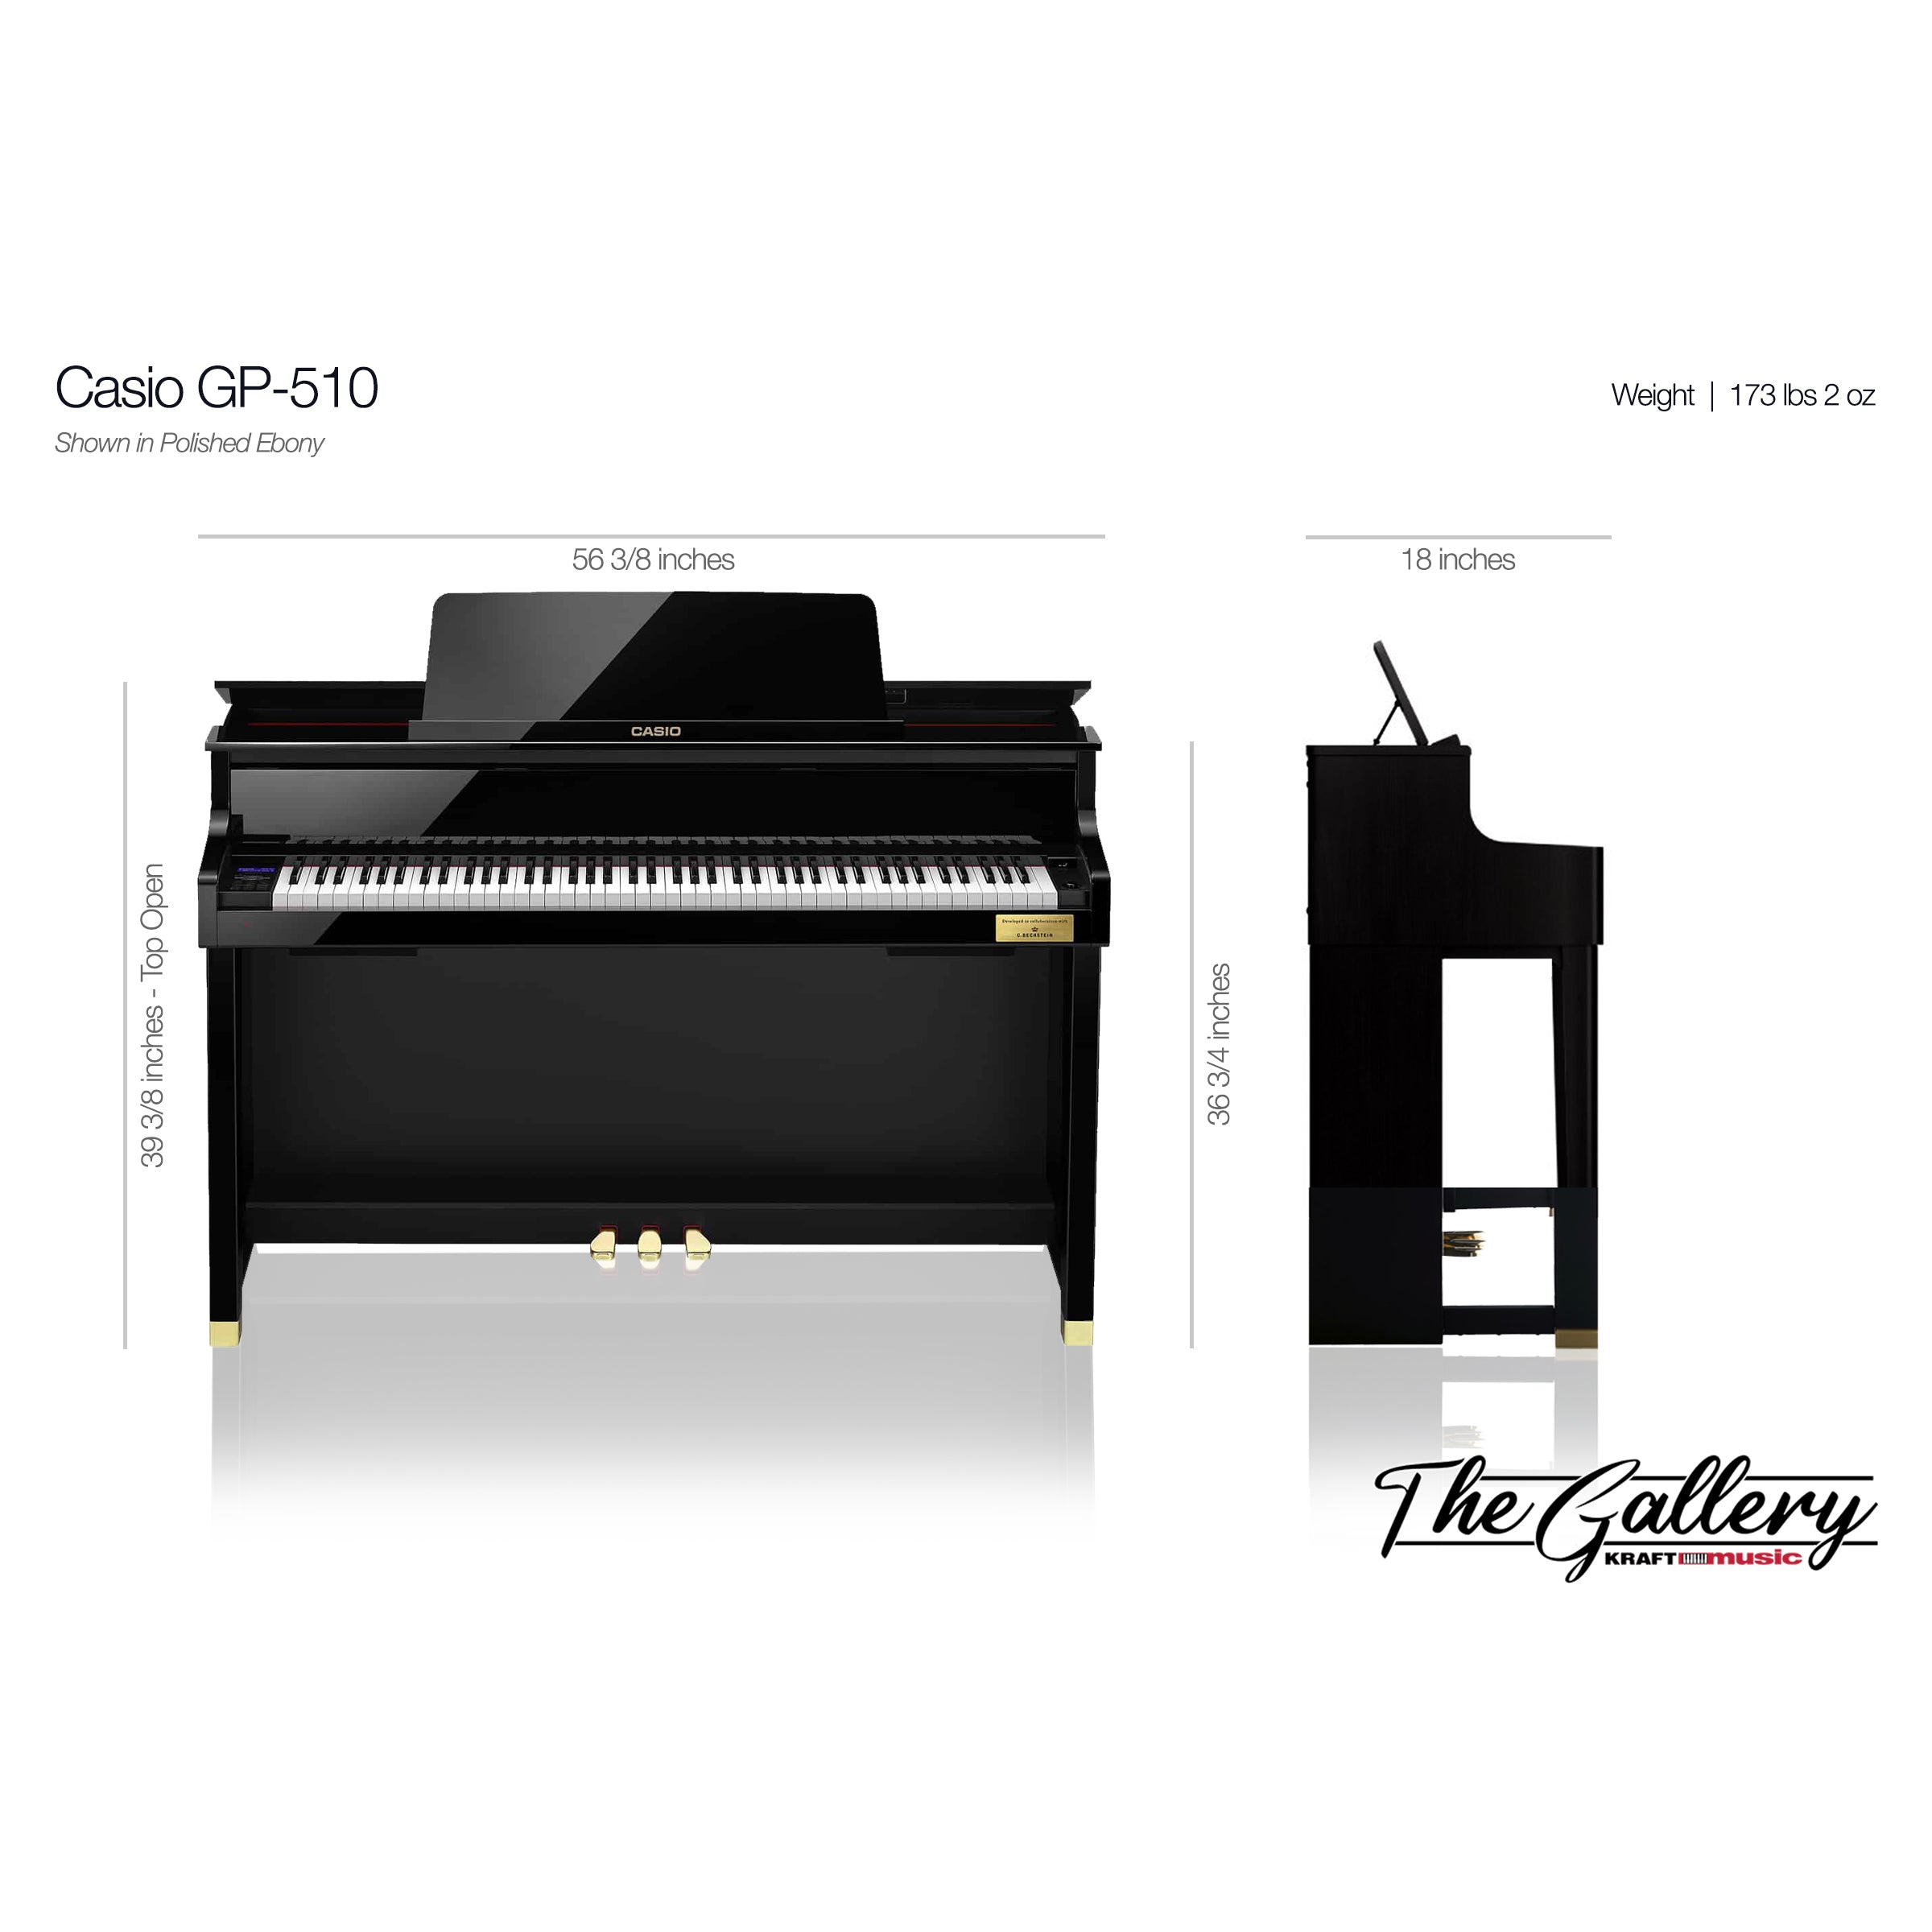 Piano Digital Casio Celviano Grand Hybrid GP-510 - Black Piano